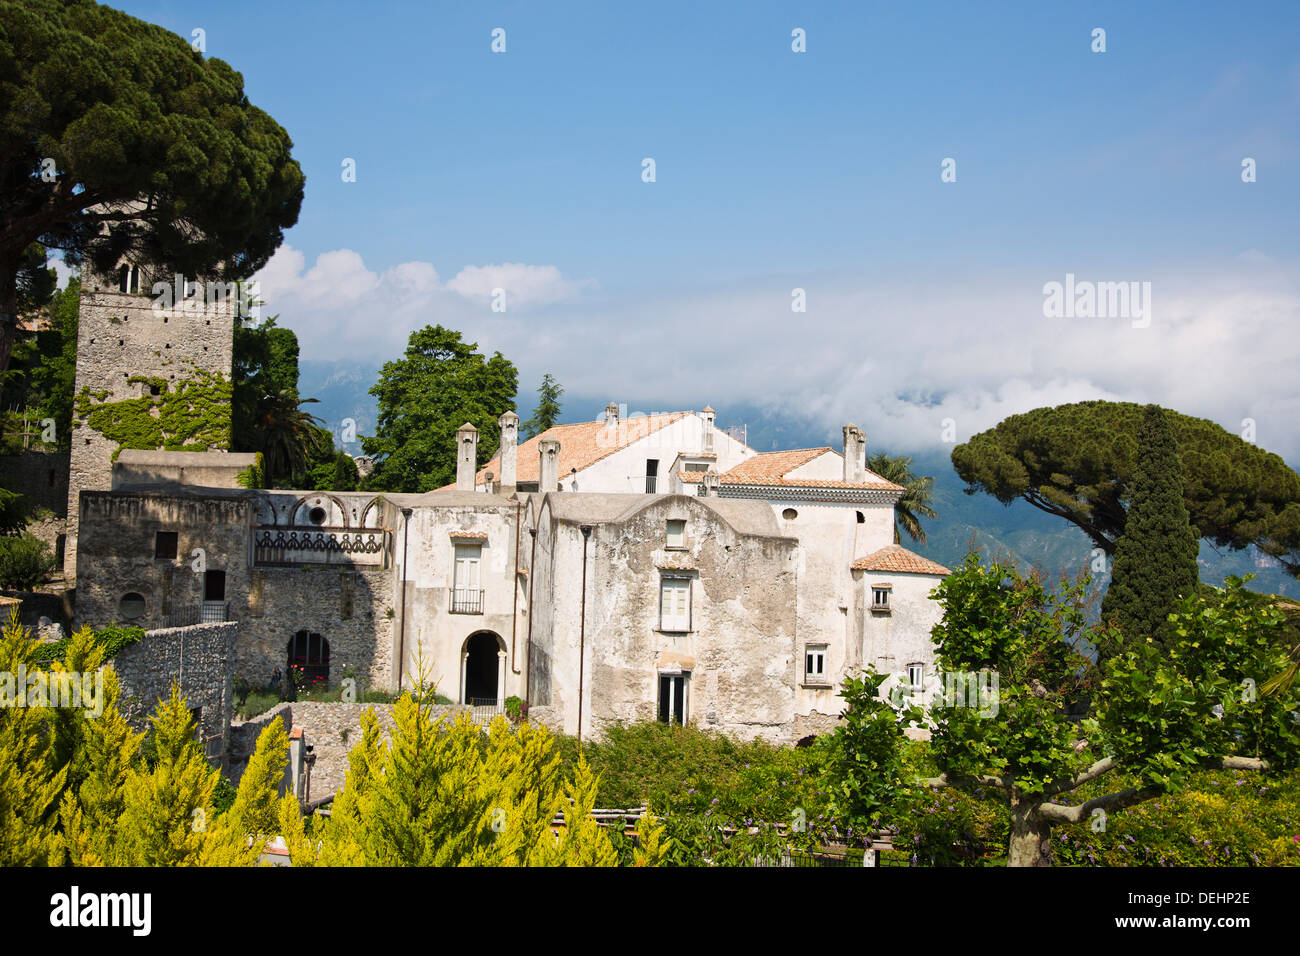 Edificio storico in una città, Villa Rufolo a Ravello, provincia di Salerno, Campania, Italia Foto Stock